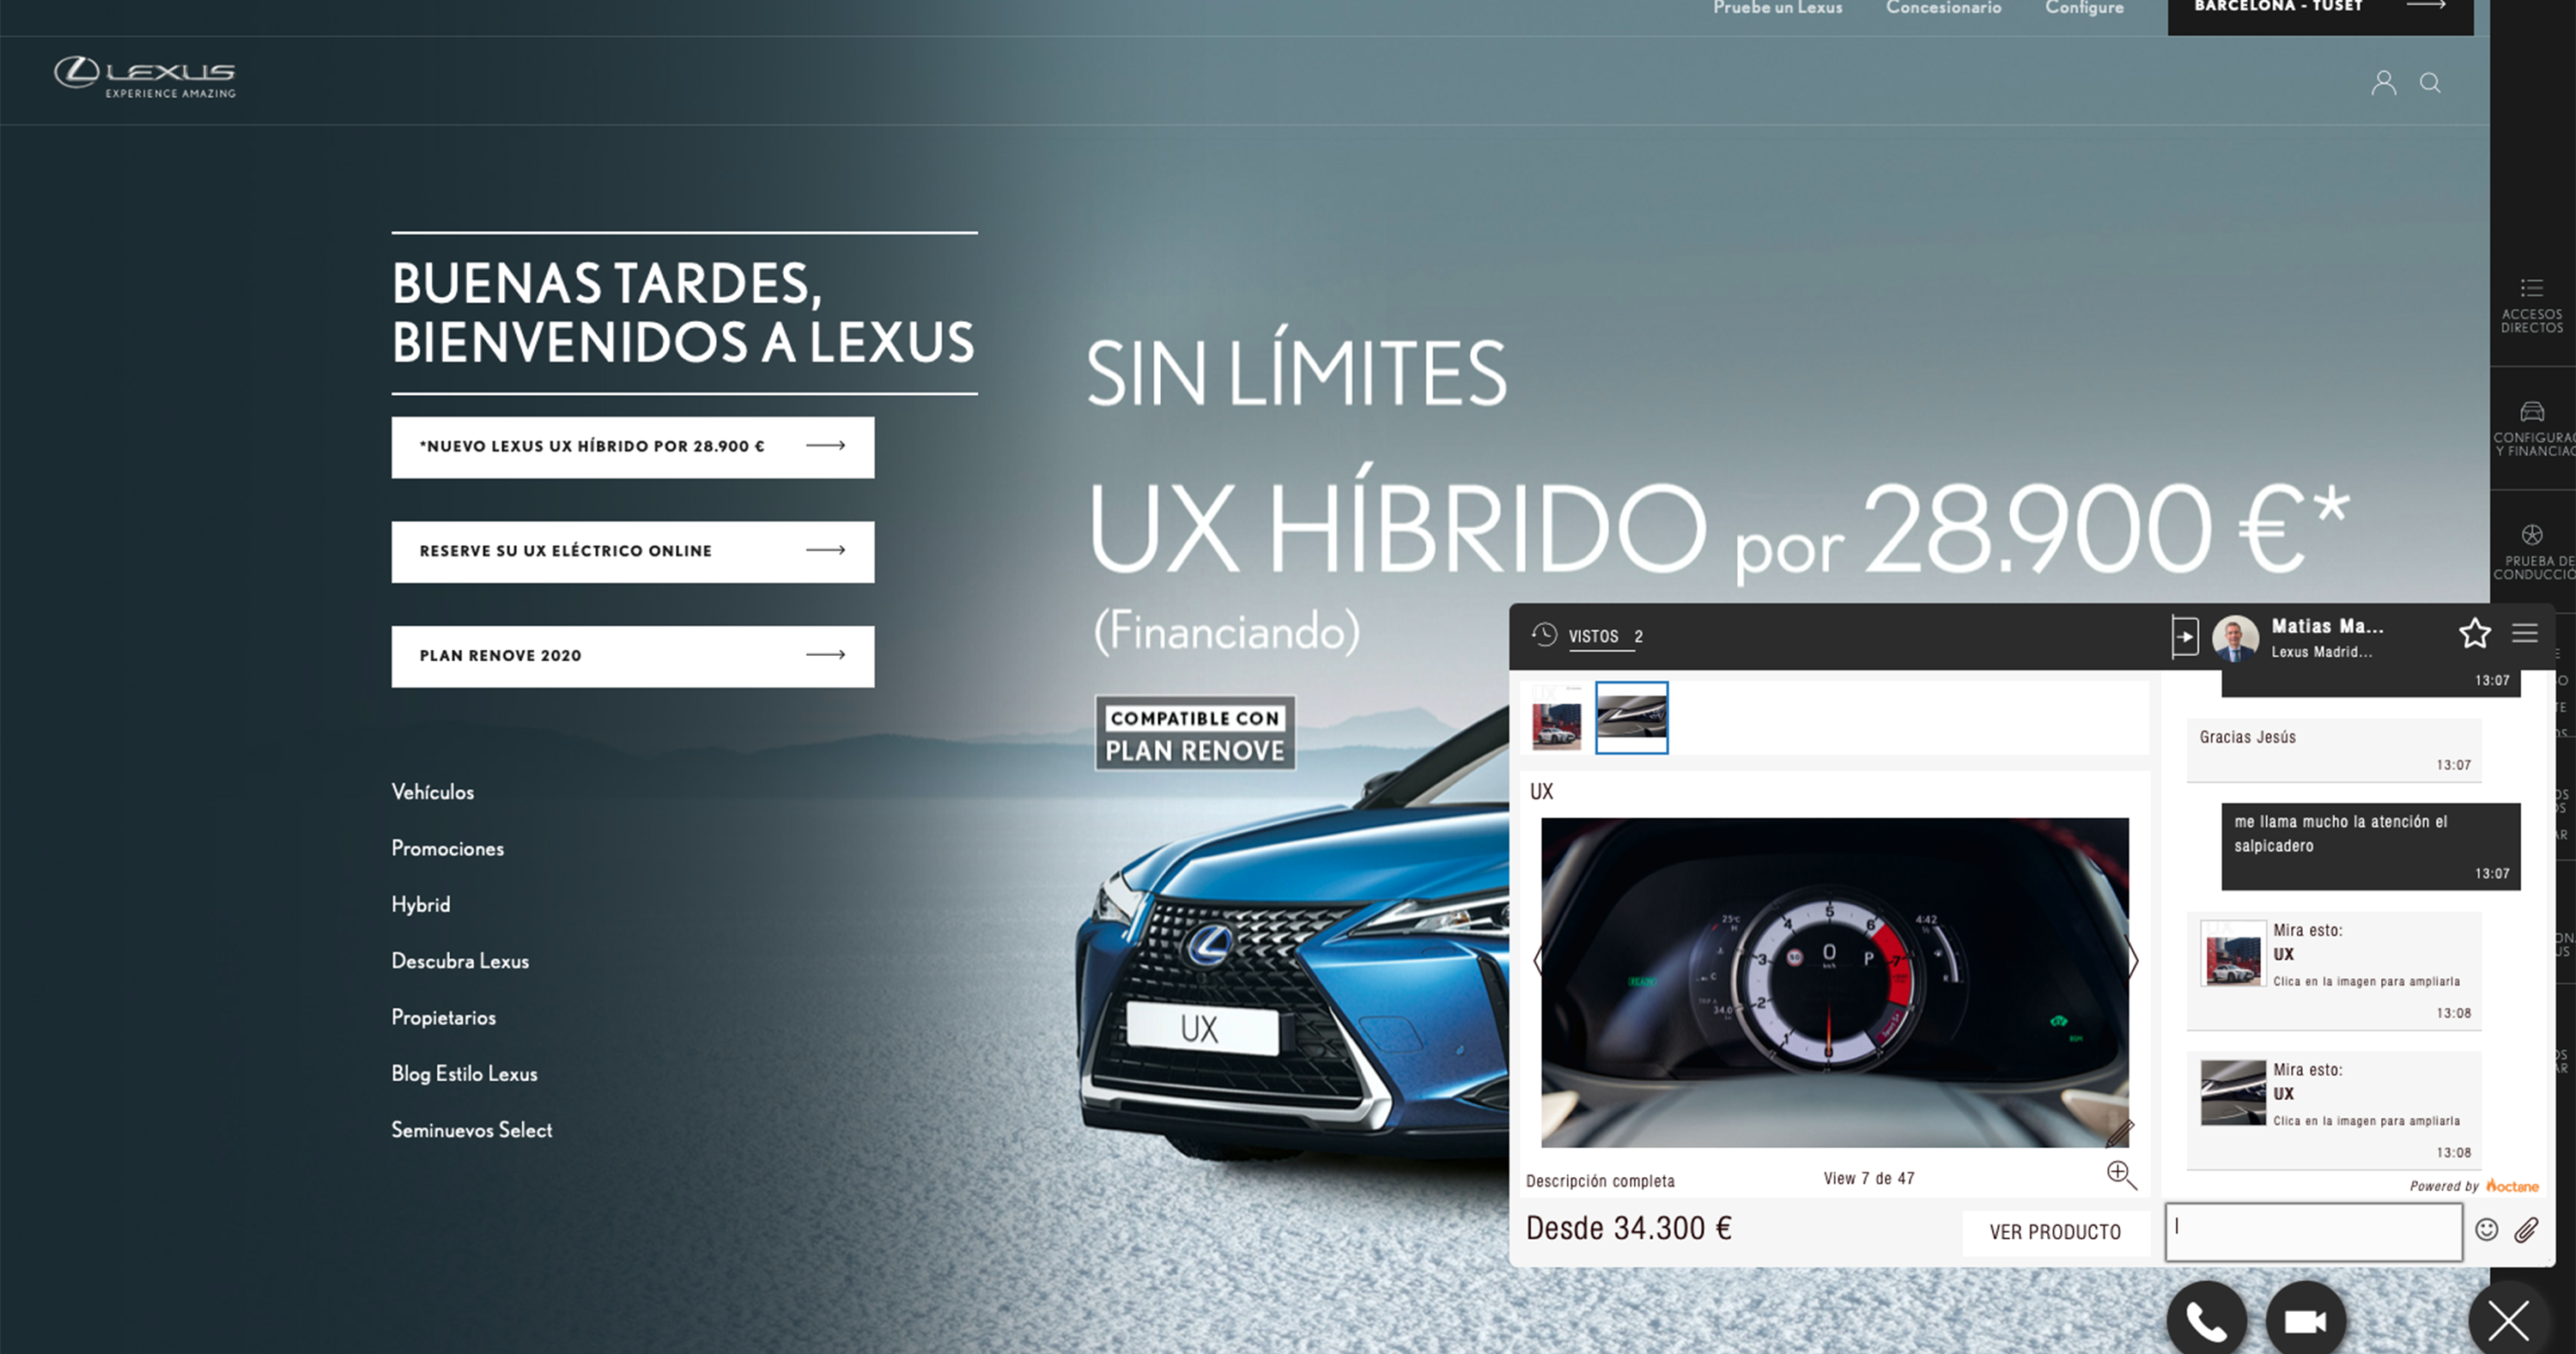 Galería: Lexus lanza Livechat: La hospitalidad de la marca ahora también en su web